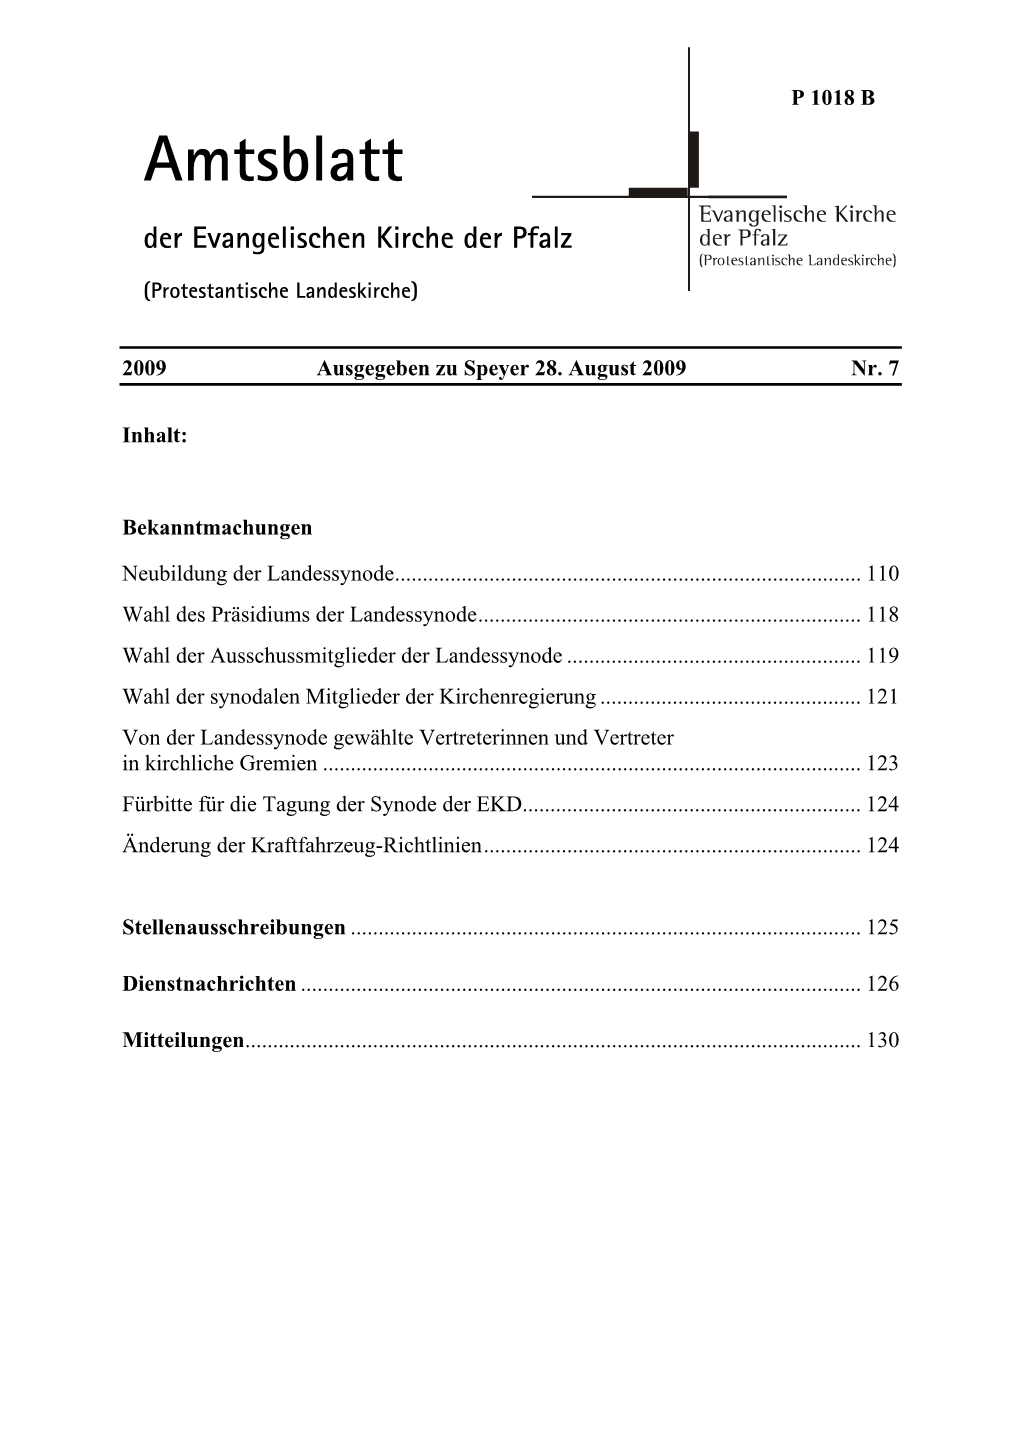 Amtsblatt Der Evangelischen Kirche Der Pfalz